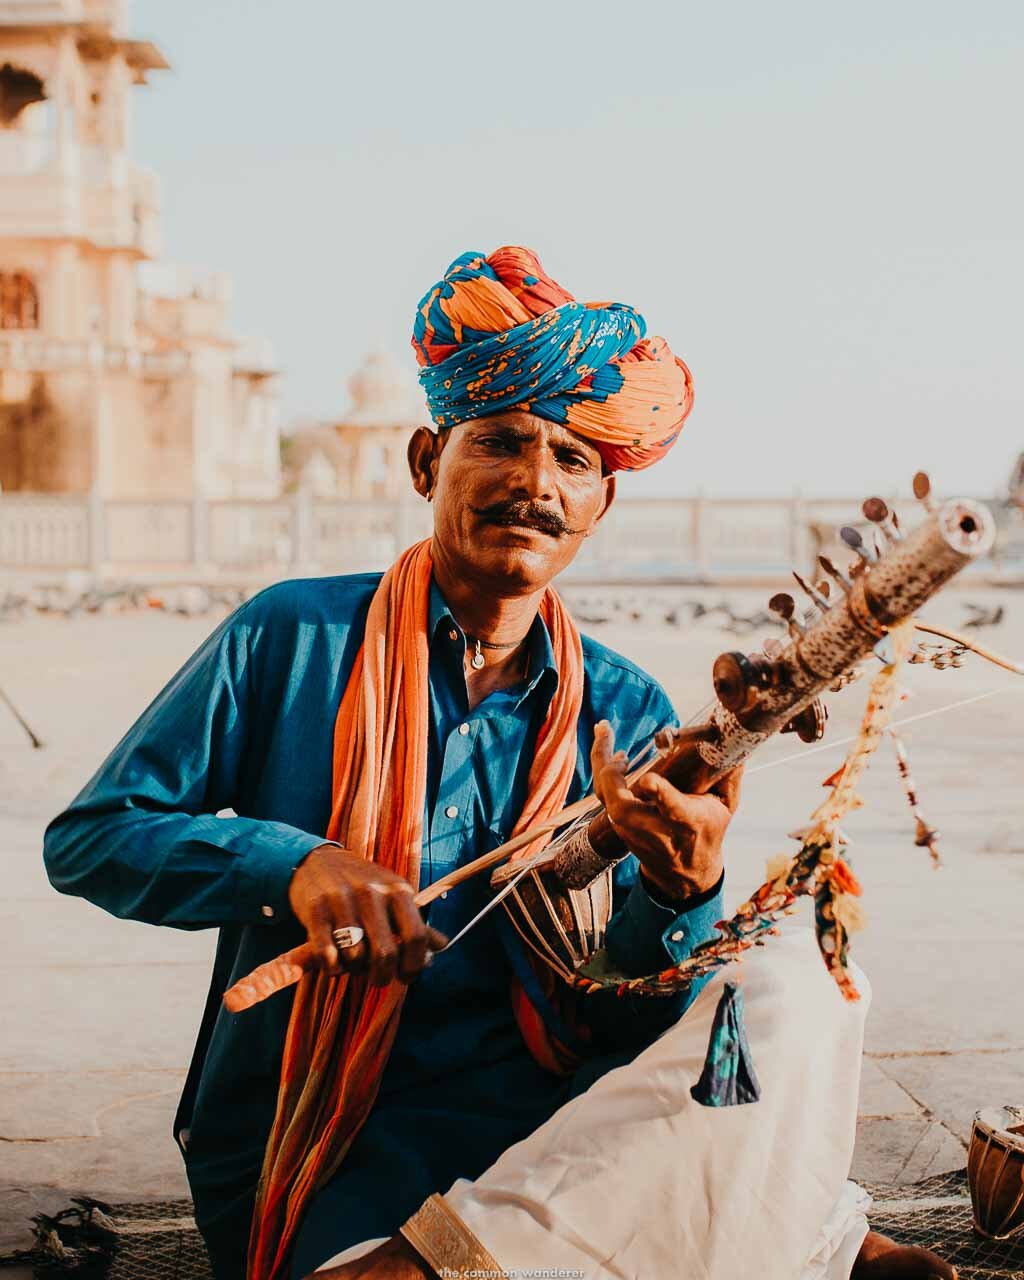 A portrait of a local Indian man playing a sarangi on Gangaur Ghat, Udaipur